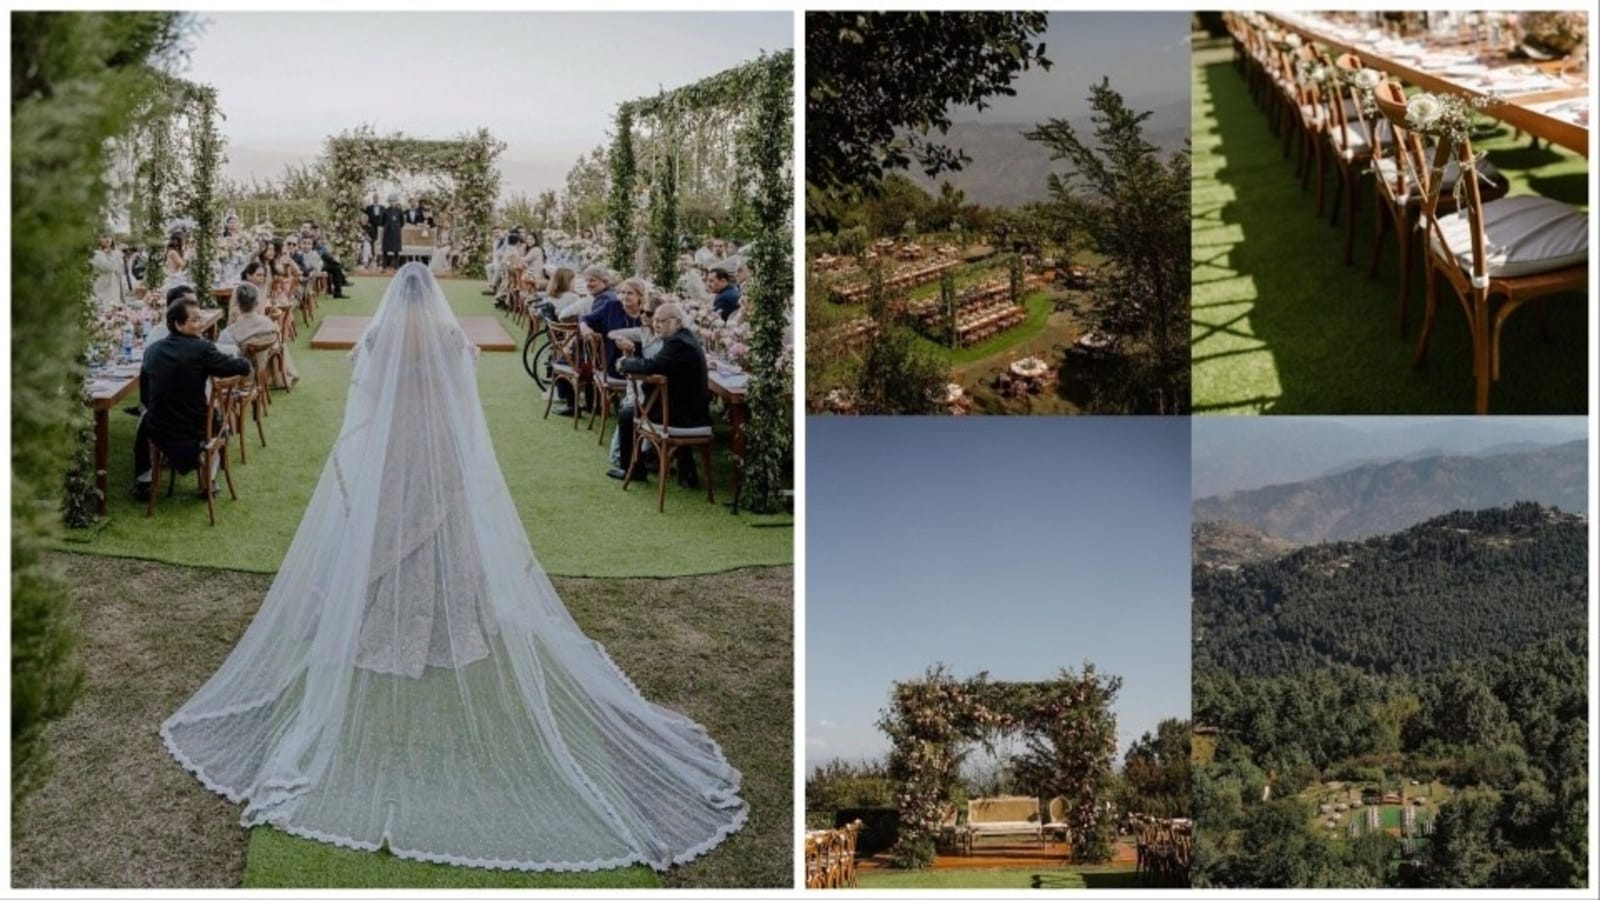 पाकिस्तान में माहिरा खान की परीकथा जैसी शादी की अंदर की तस्वीरें: सुंदर दृश्यों के साथ असाधारण स्थल देखें